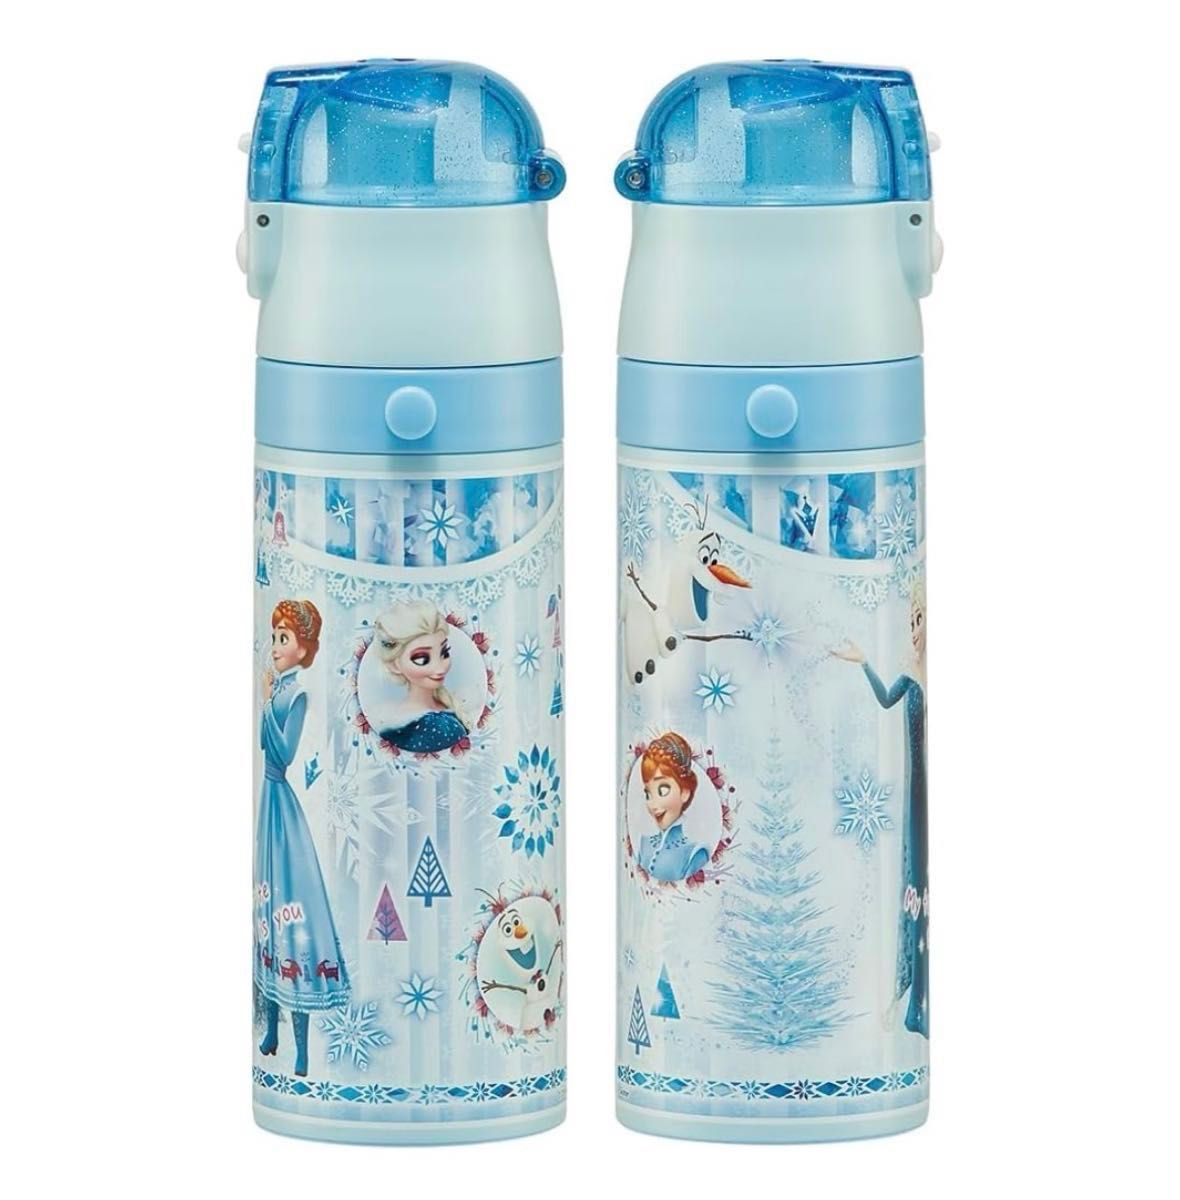 【新品】水筒 470ml ステンレスボトル ステンボトル ダイレクト SDC4 アナと雪の女王 24年 アナ雪 ディズニー 